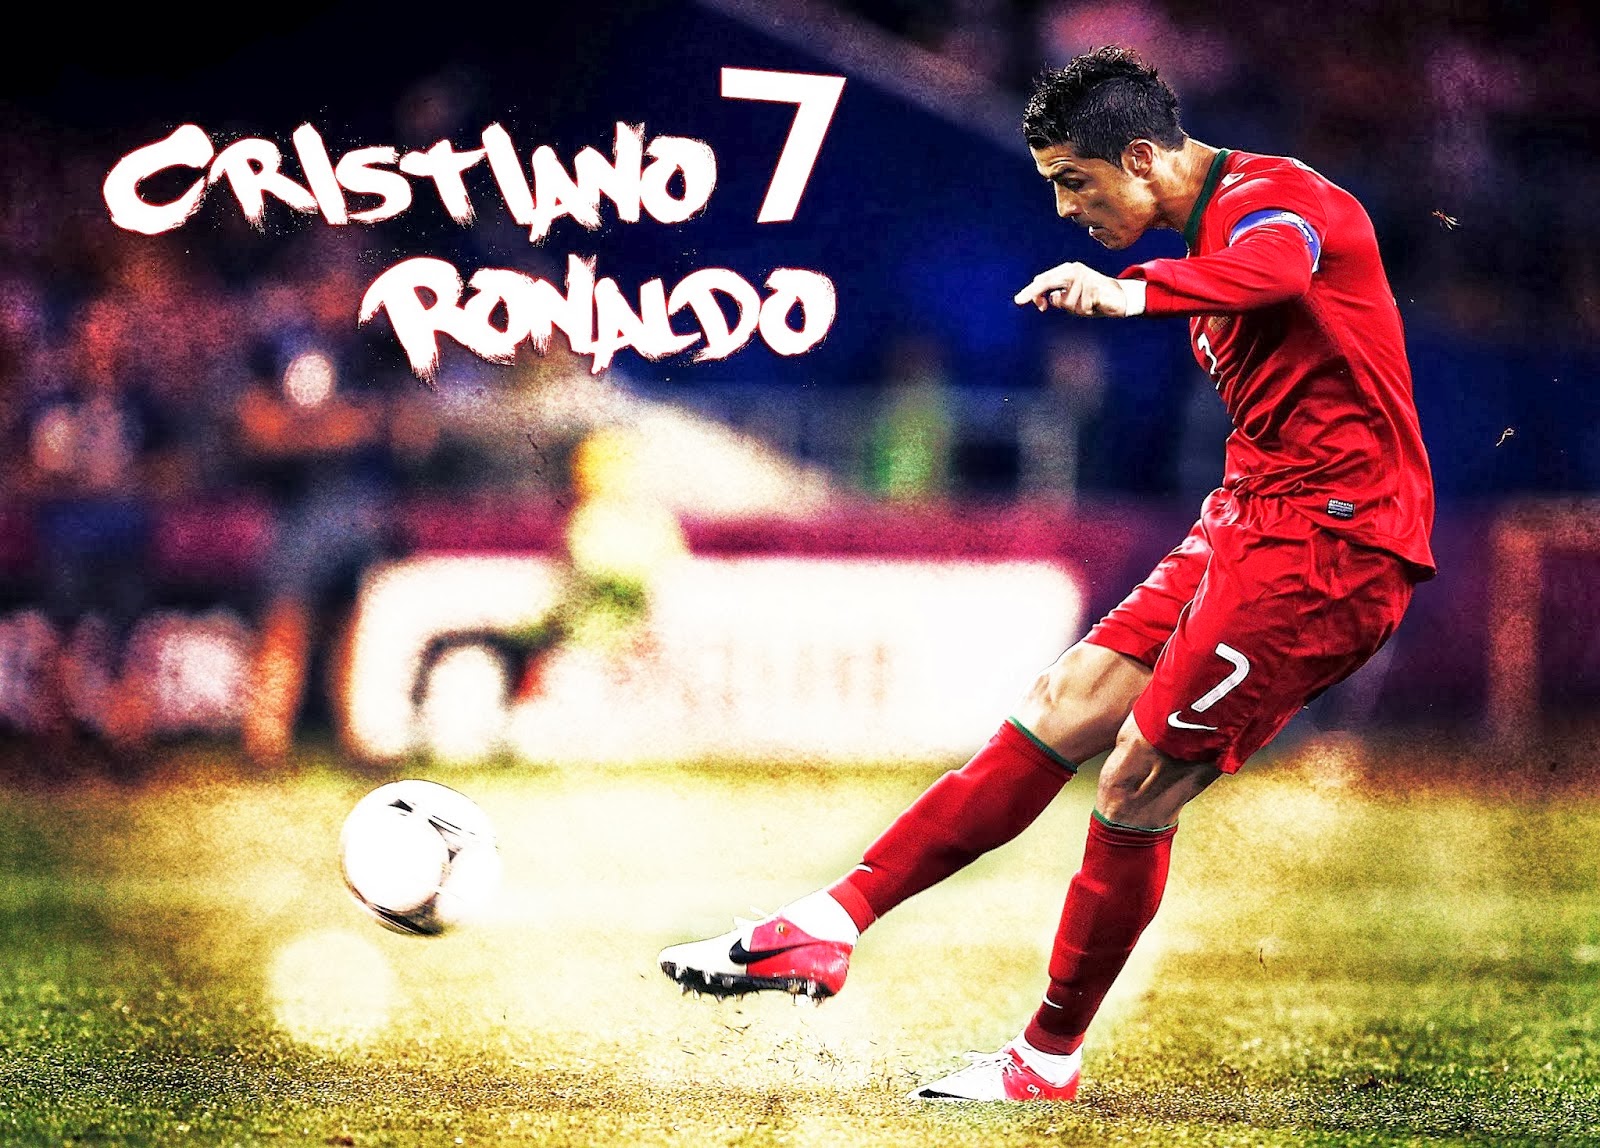 Cristiano Ronaldo HD Wallpaper Pictures Image